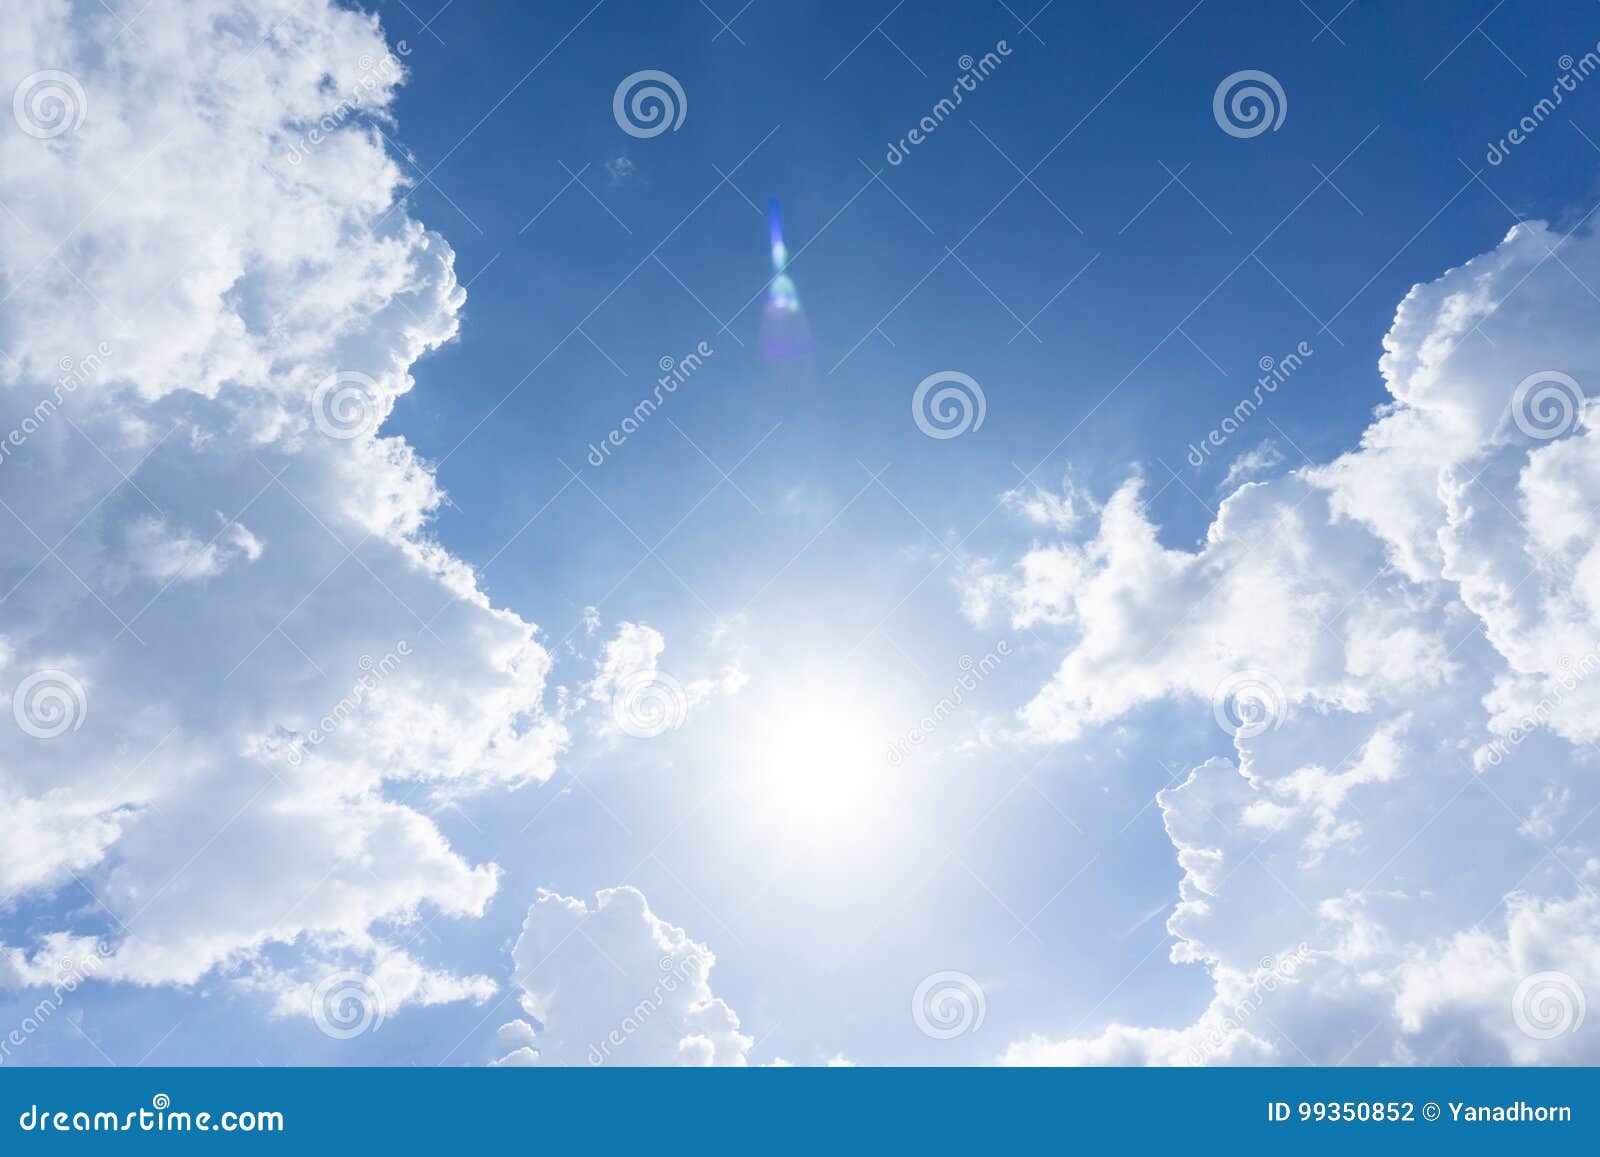 μπλε ουρανός με τον ήλιο και σύννεφα για το υπόβαθρο. Μπλε ουρανός με τα σύννεφα για το υπόβαθρο